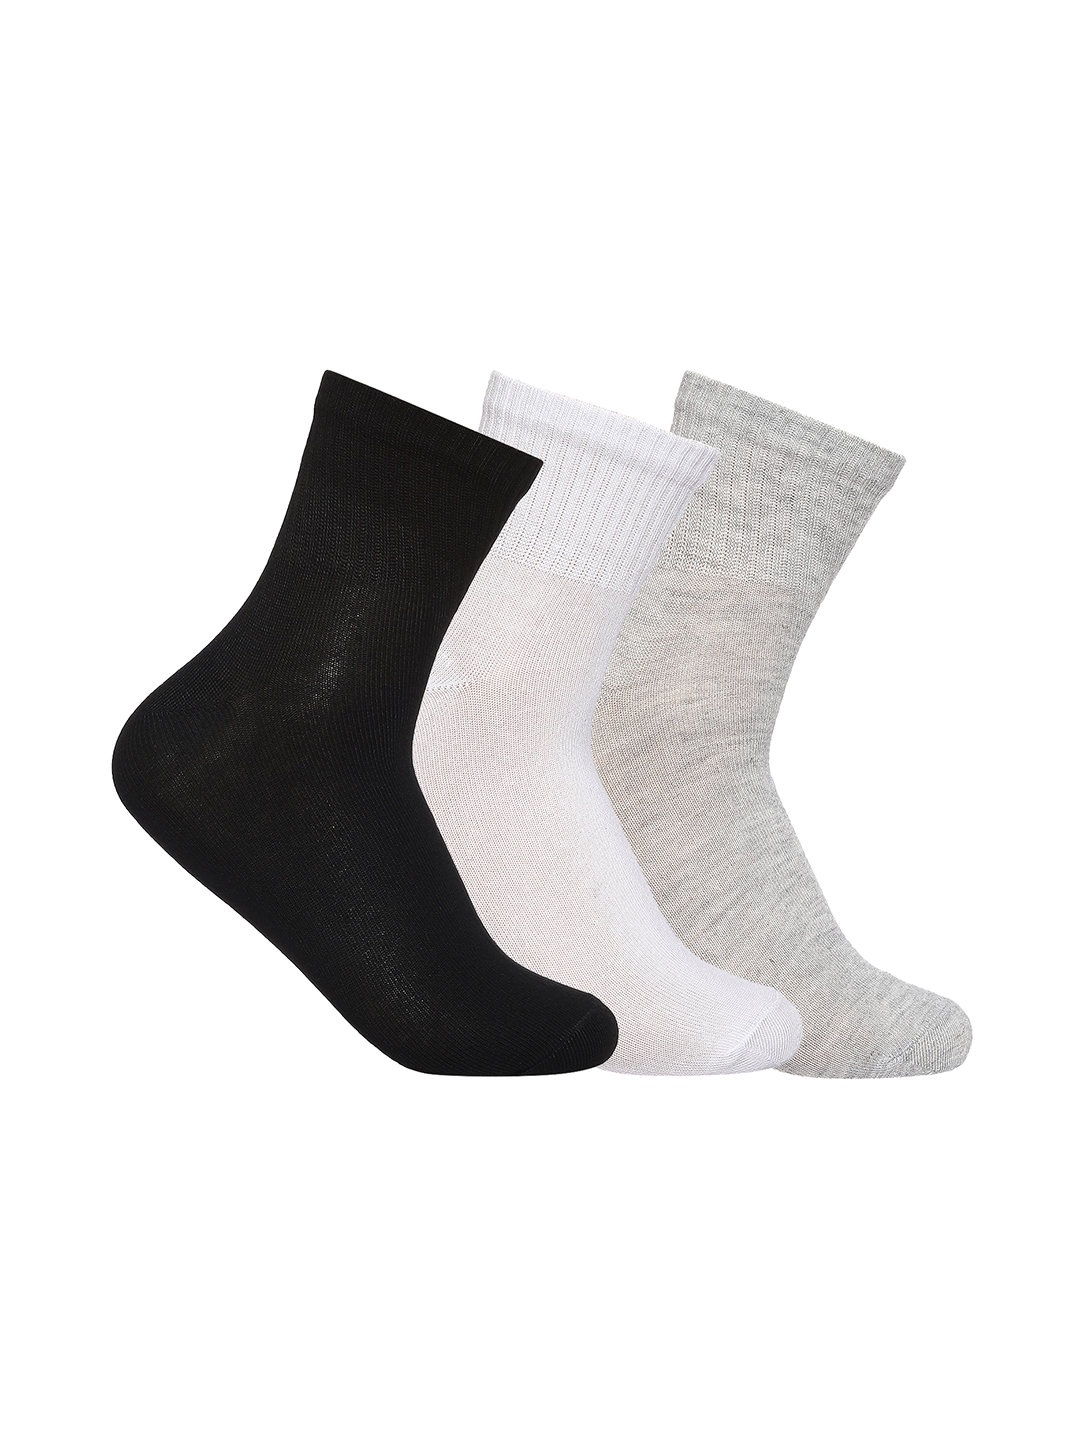 Men's Spun Poly Ankle Socks